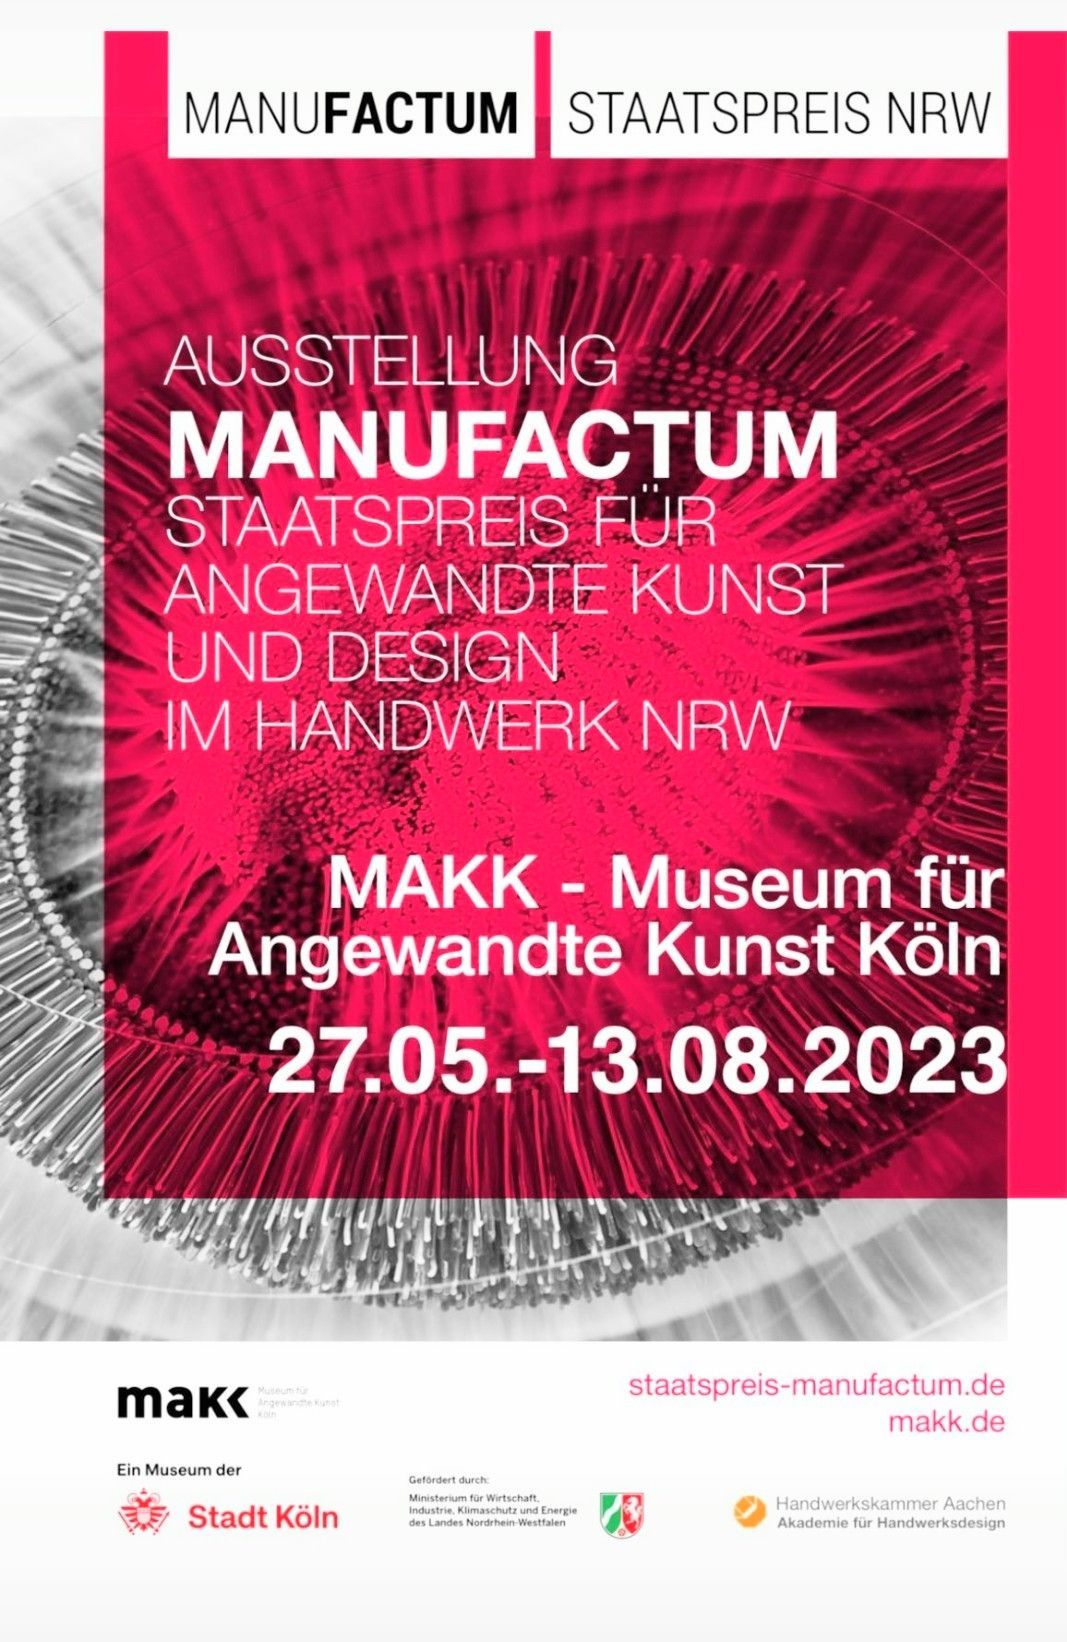 Staatspreis NRW Manufactum Kunsthandwerk